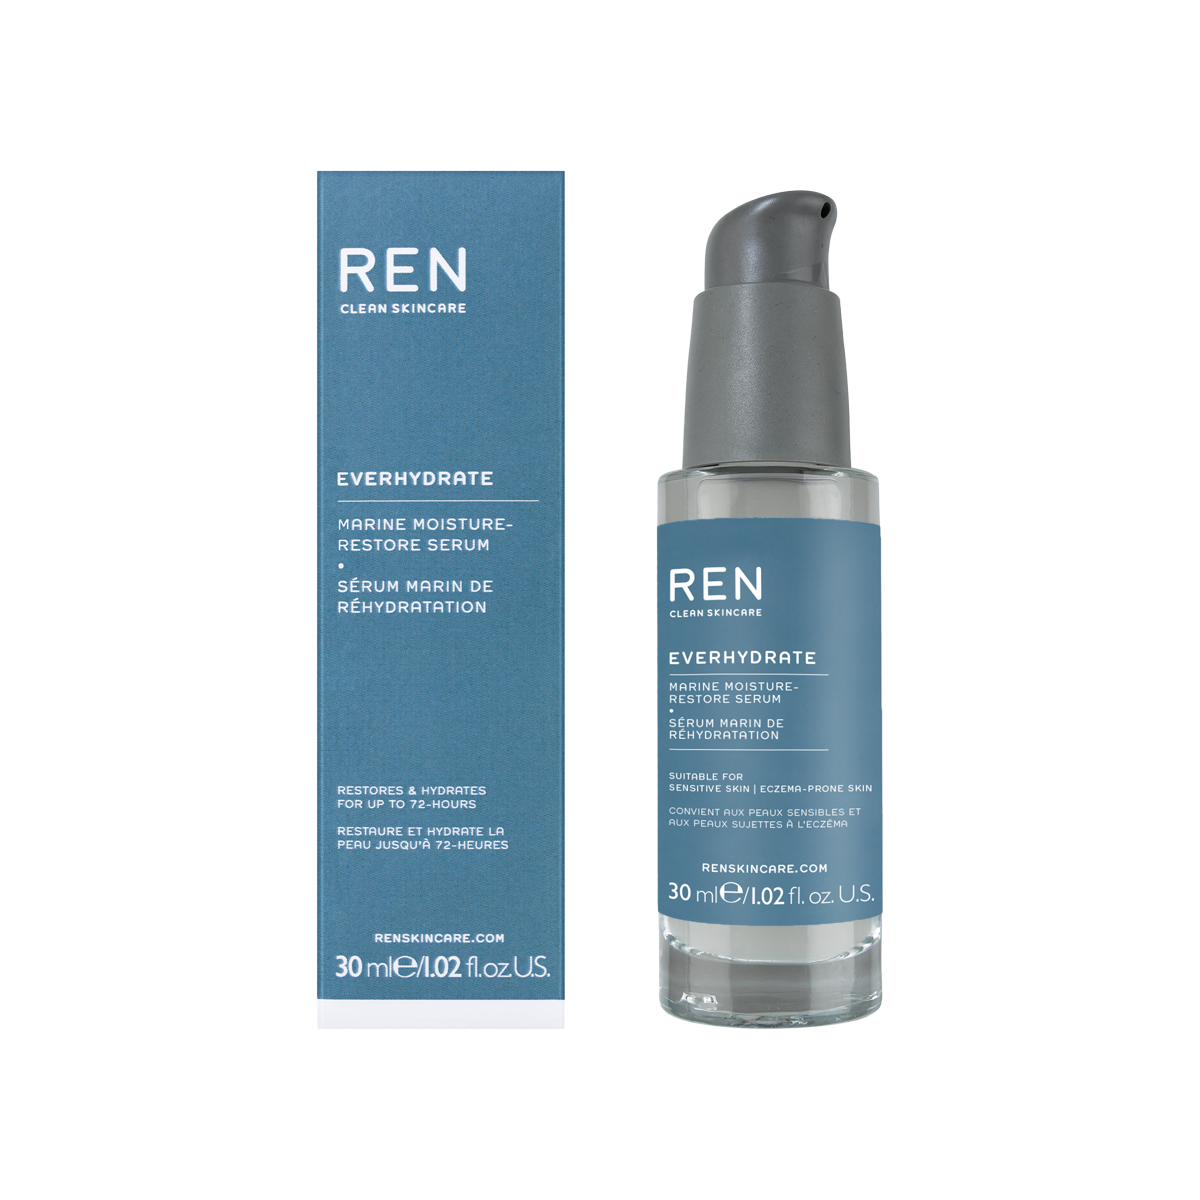 Ren Clean Skincare - Everhydrate Marine Moisture-Restore Seru